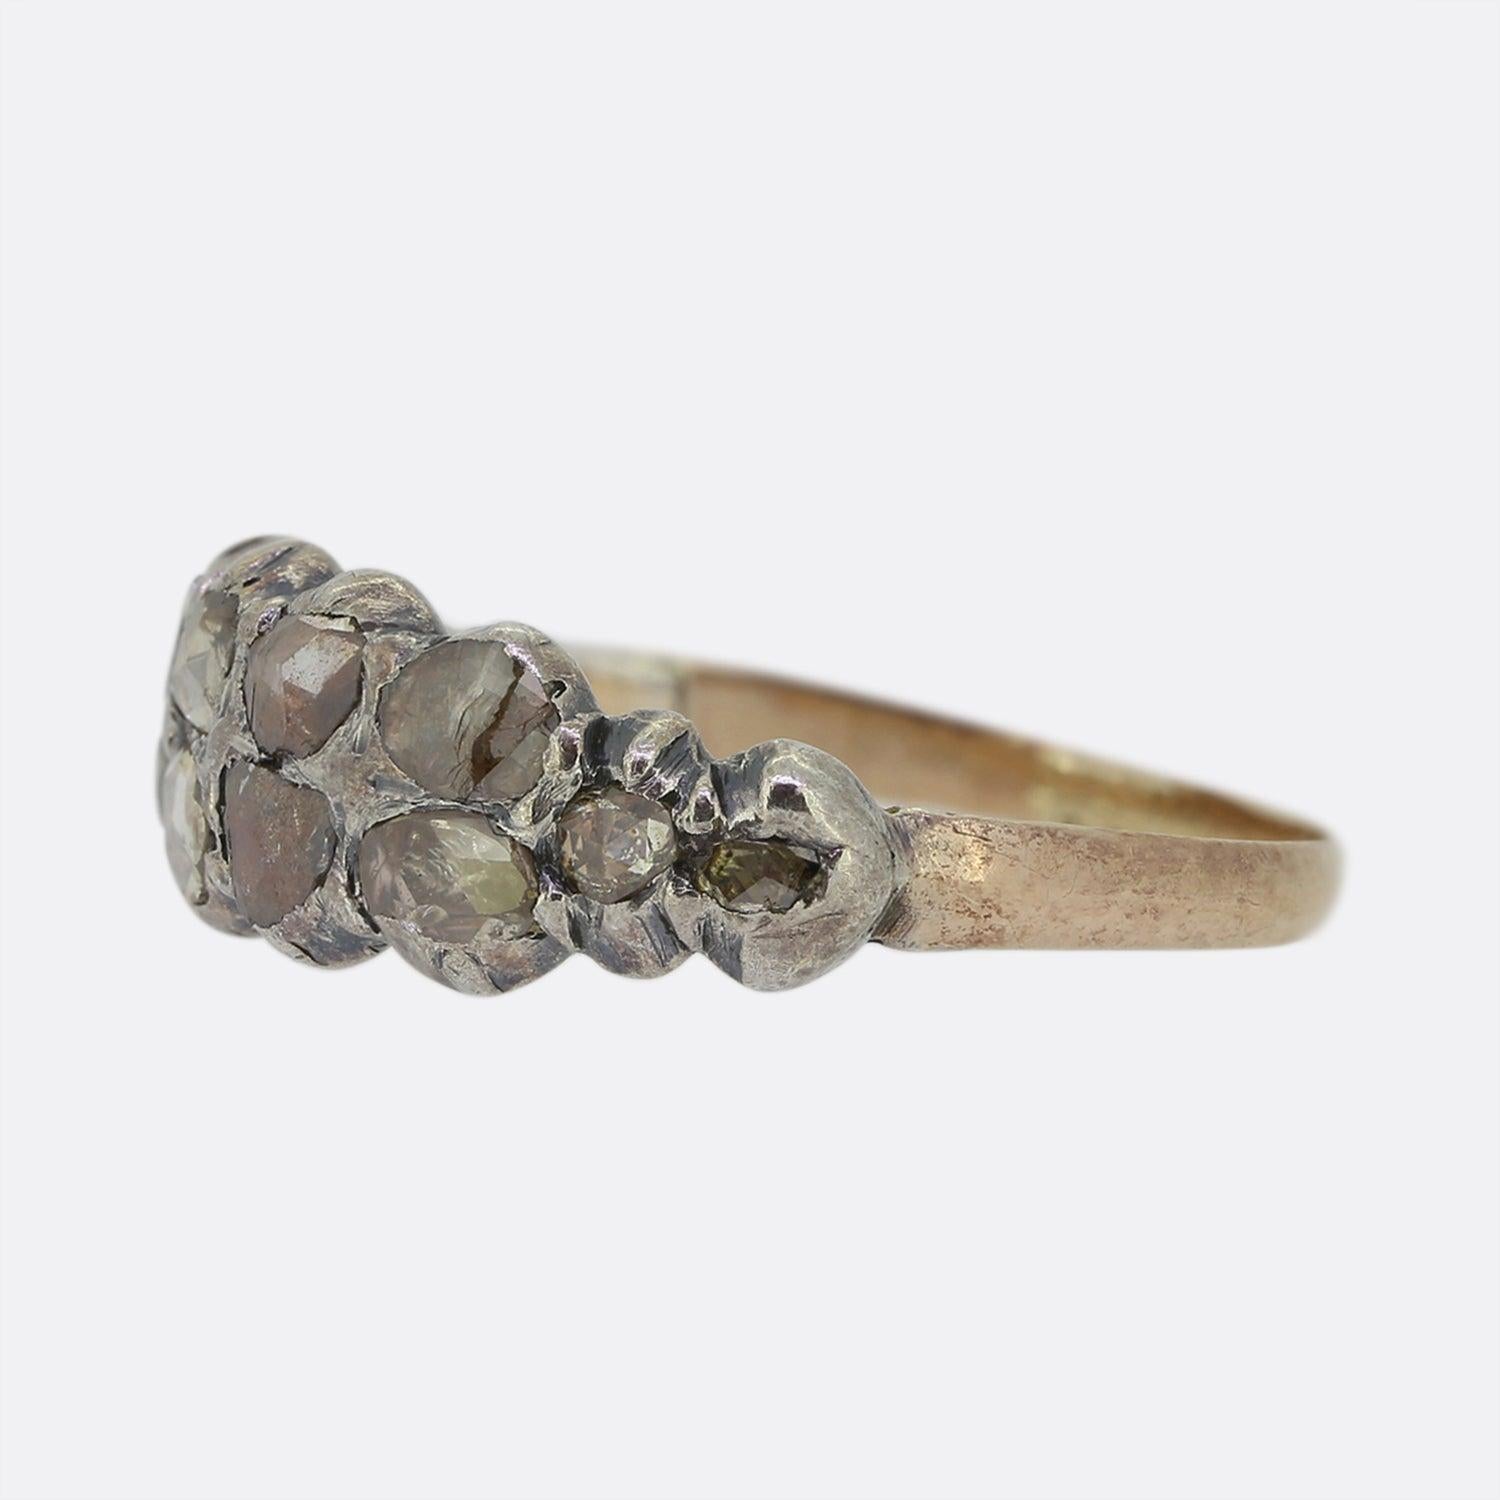 Dies ist ein wunderschöner antiker georgischer Diamantring. Der Ring besteht aus 12 Diamanten im Rosenschliff, die in einem typisch georgischen Stil in Silber gefasst sind. Dieser Ring sitzt tief am Finger, so dass er recht praktisch zu tragen ist,